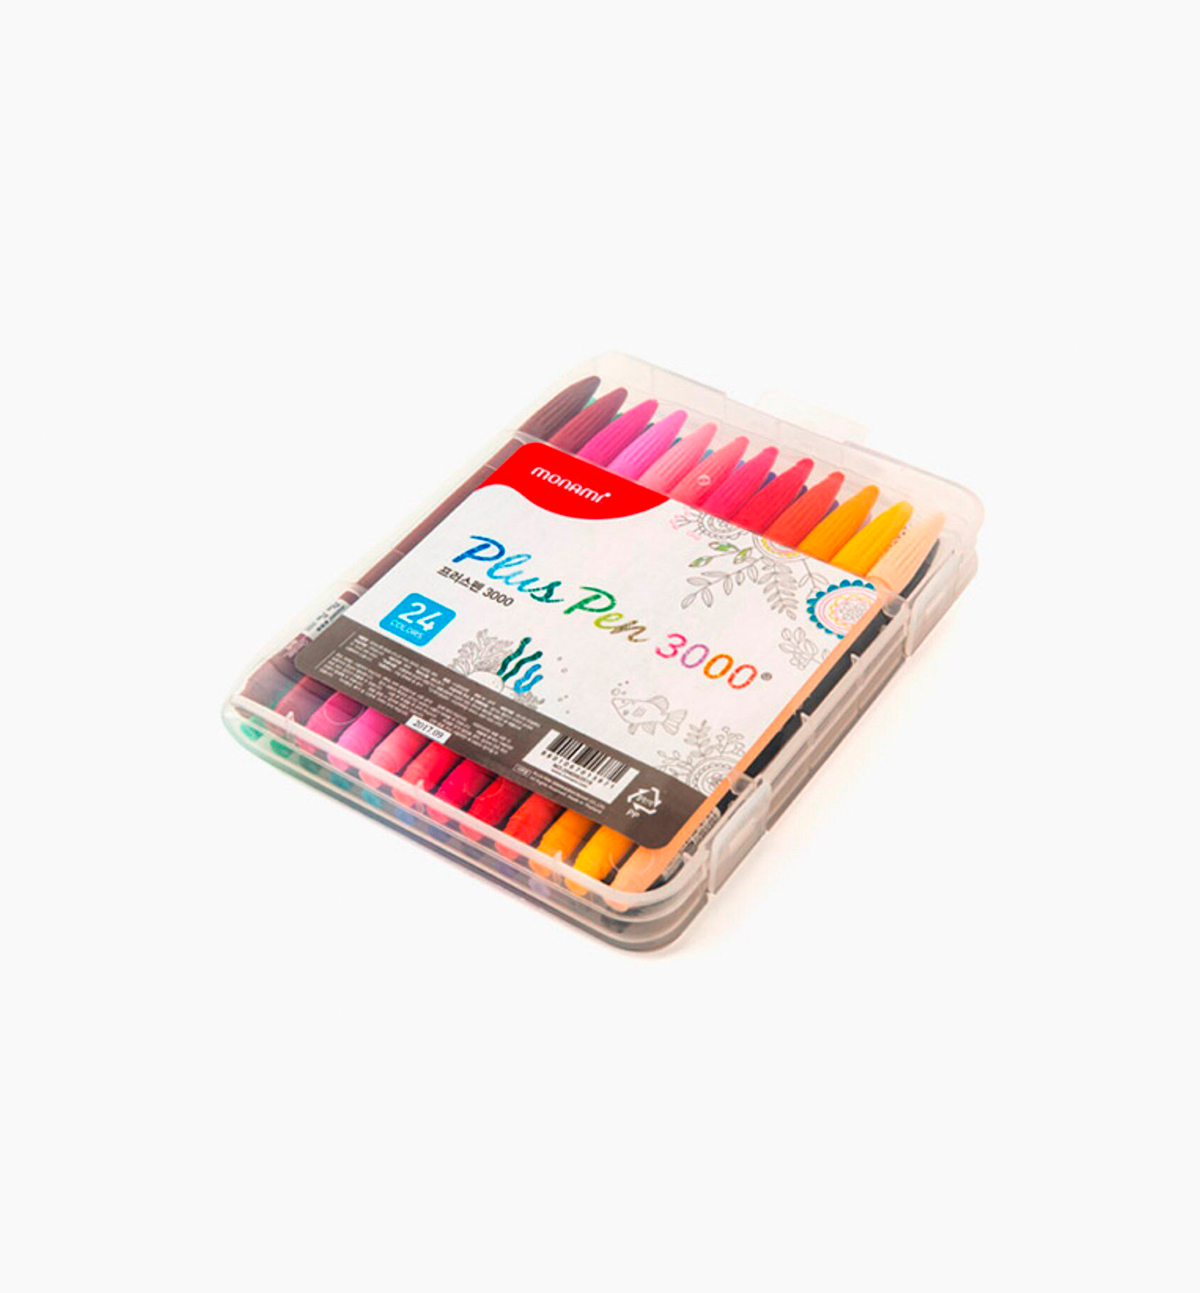 24 Color Plus Pens